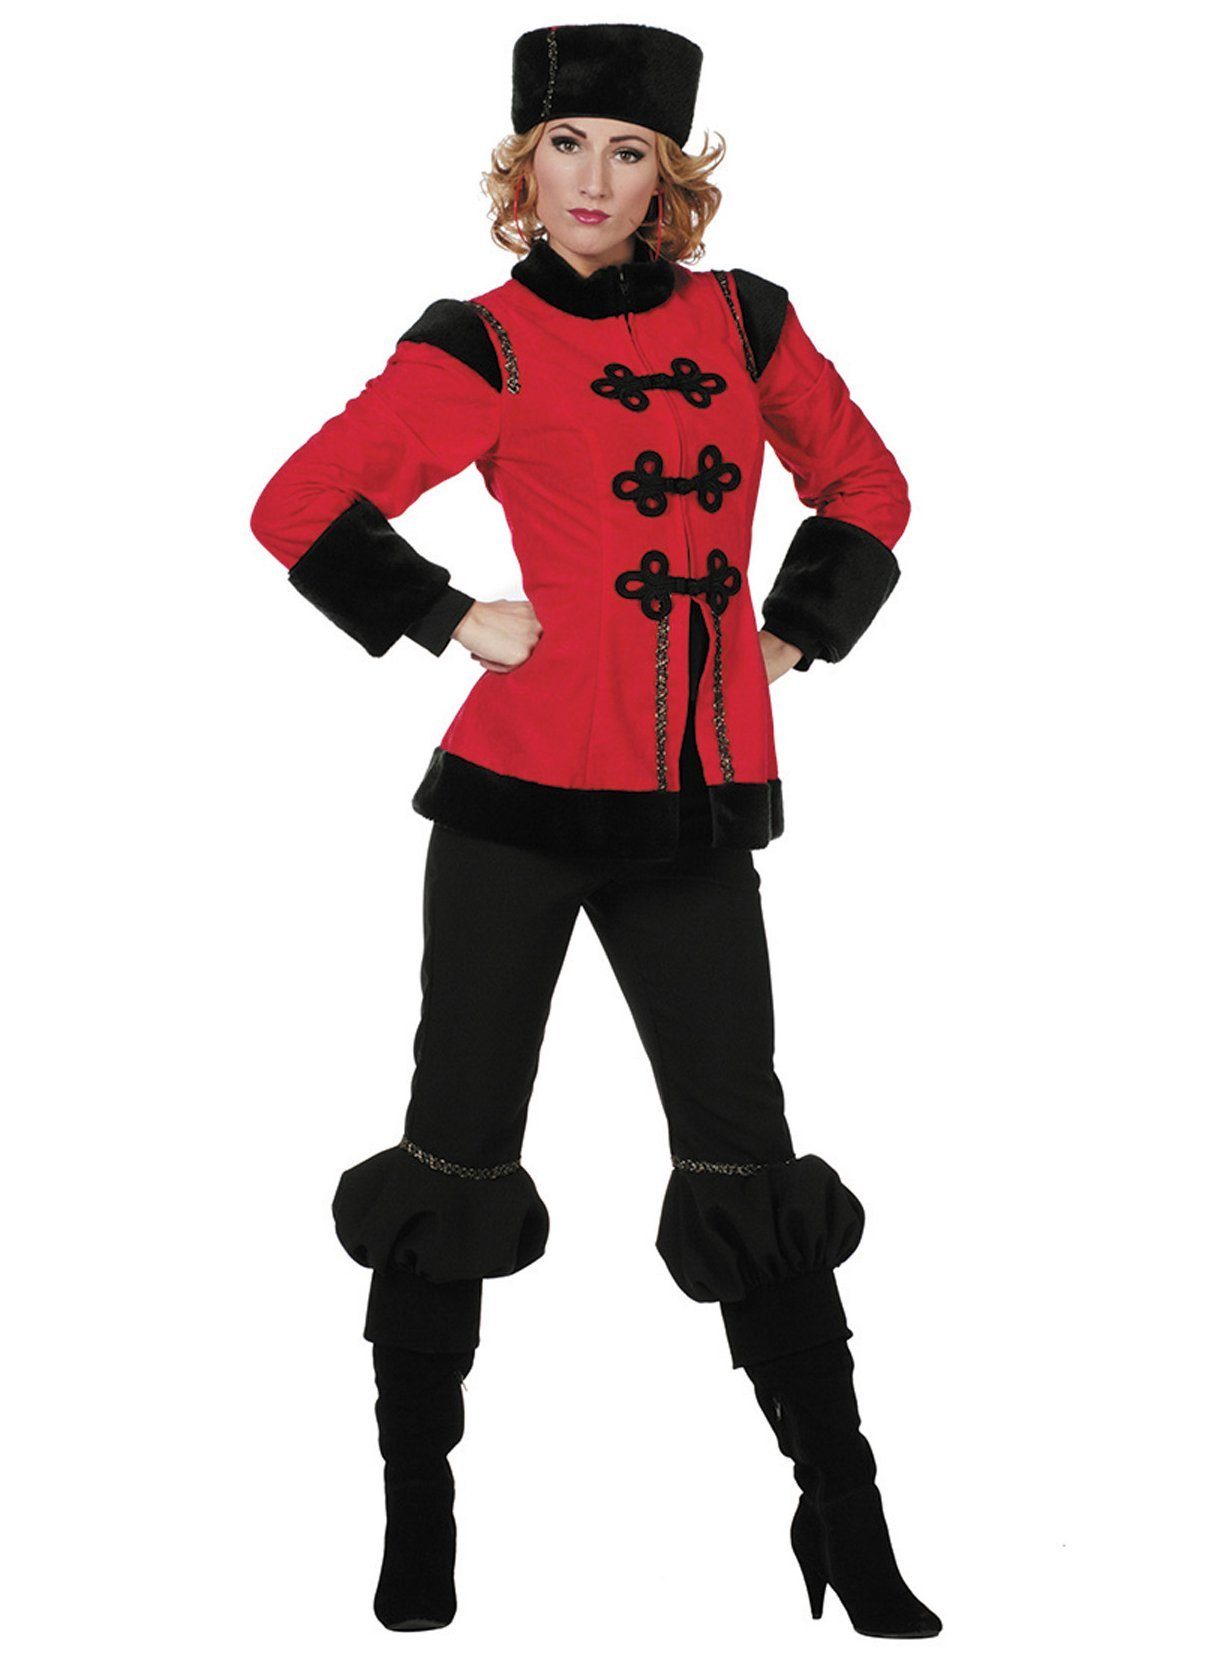 Metamorph Kostüm Kosakin, Uniformkostüm im Look der traditionellen Einheiten